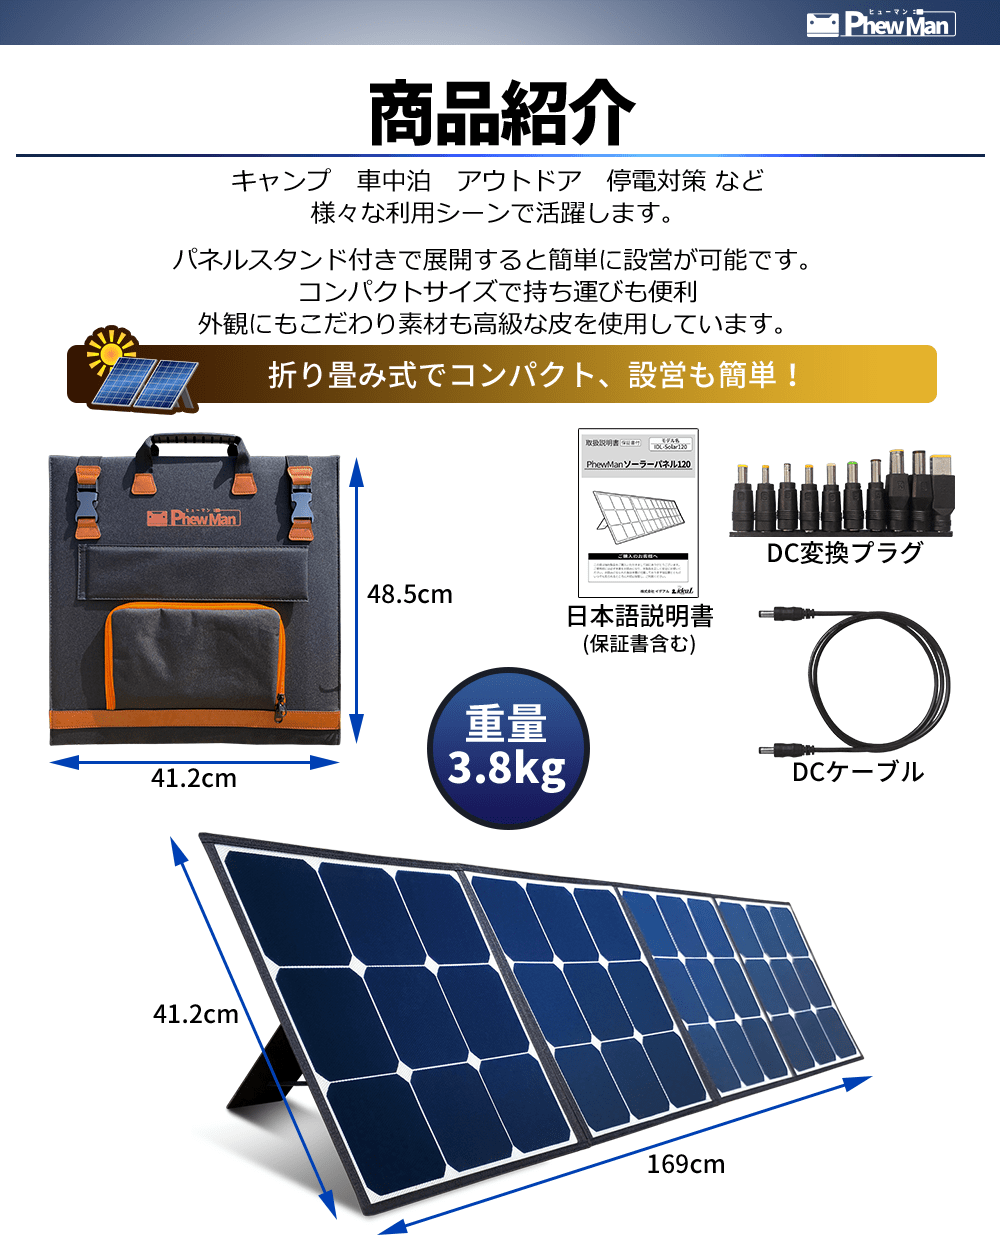 【新品】PhewMan ポータブル電源 1162Wh + ソーラーパネル120W